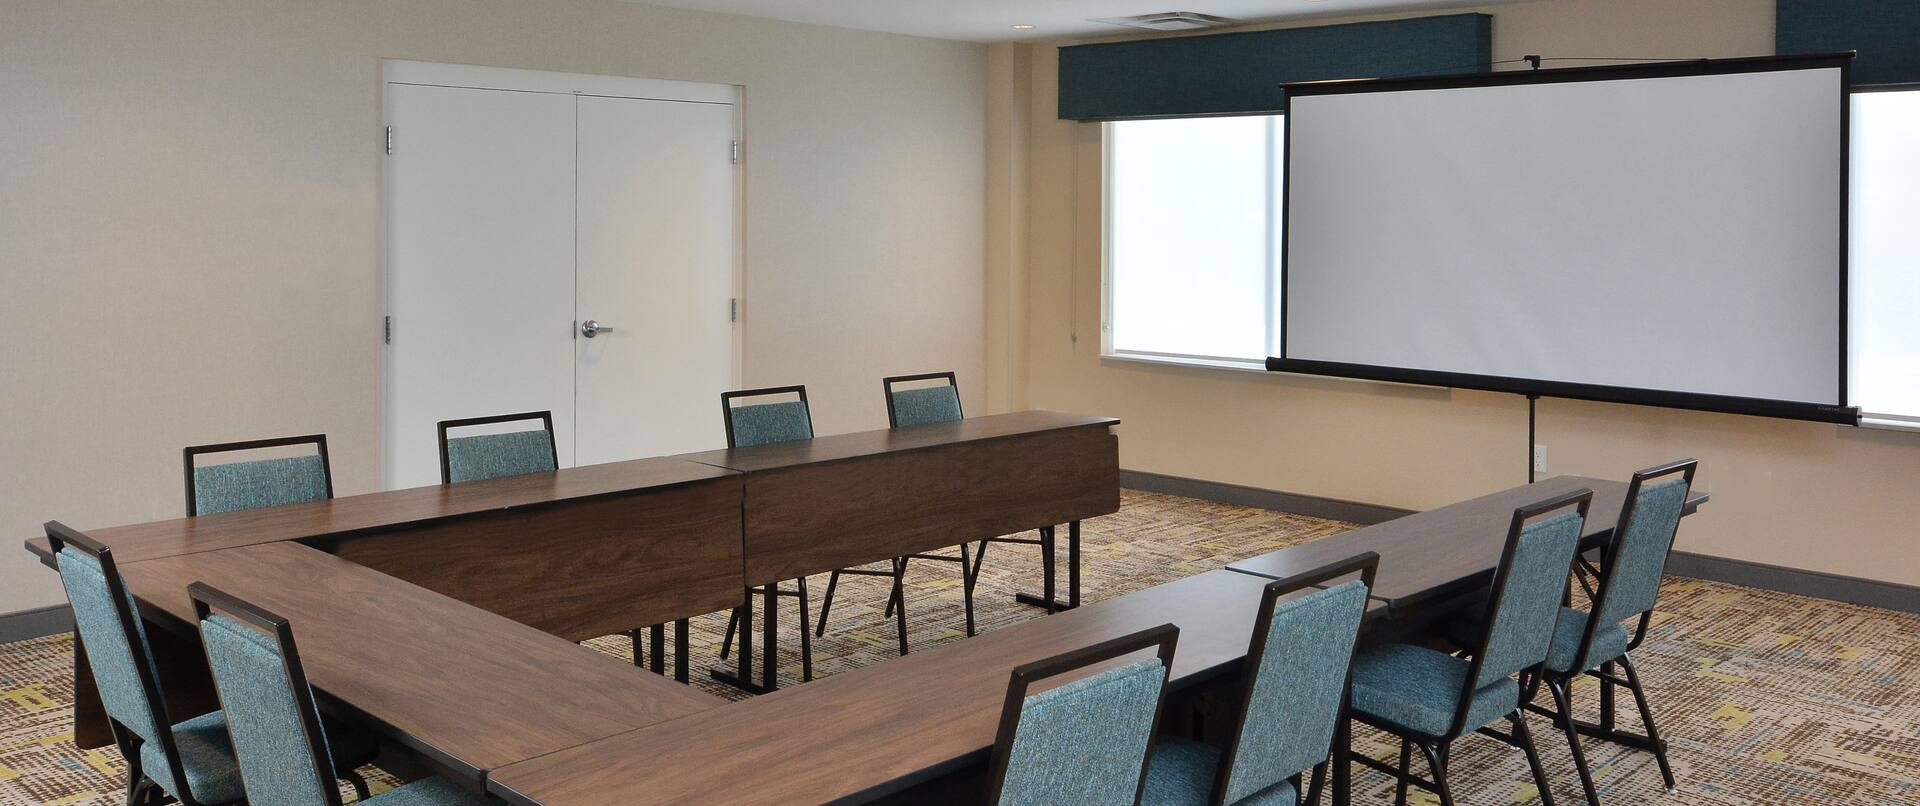 Meeting Room Setup U Style